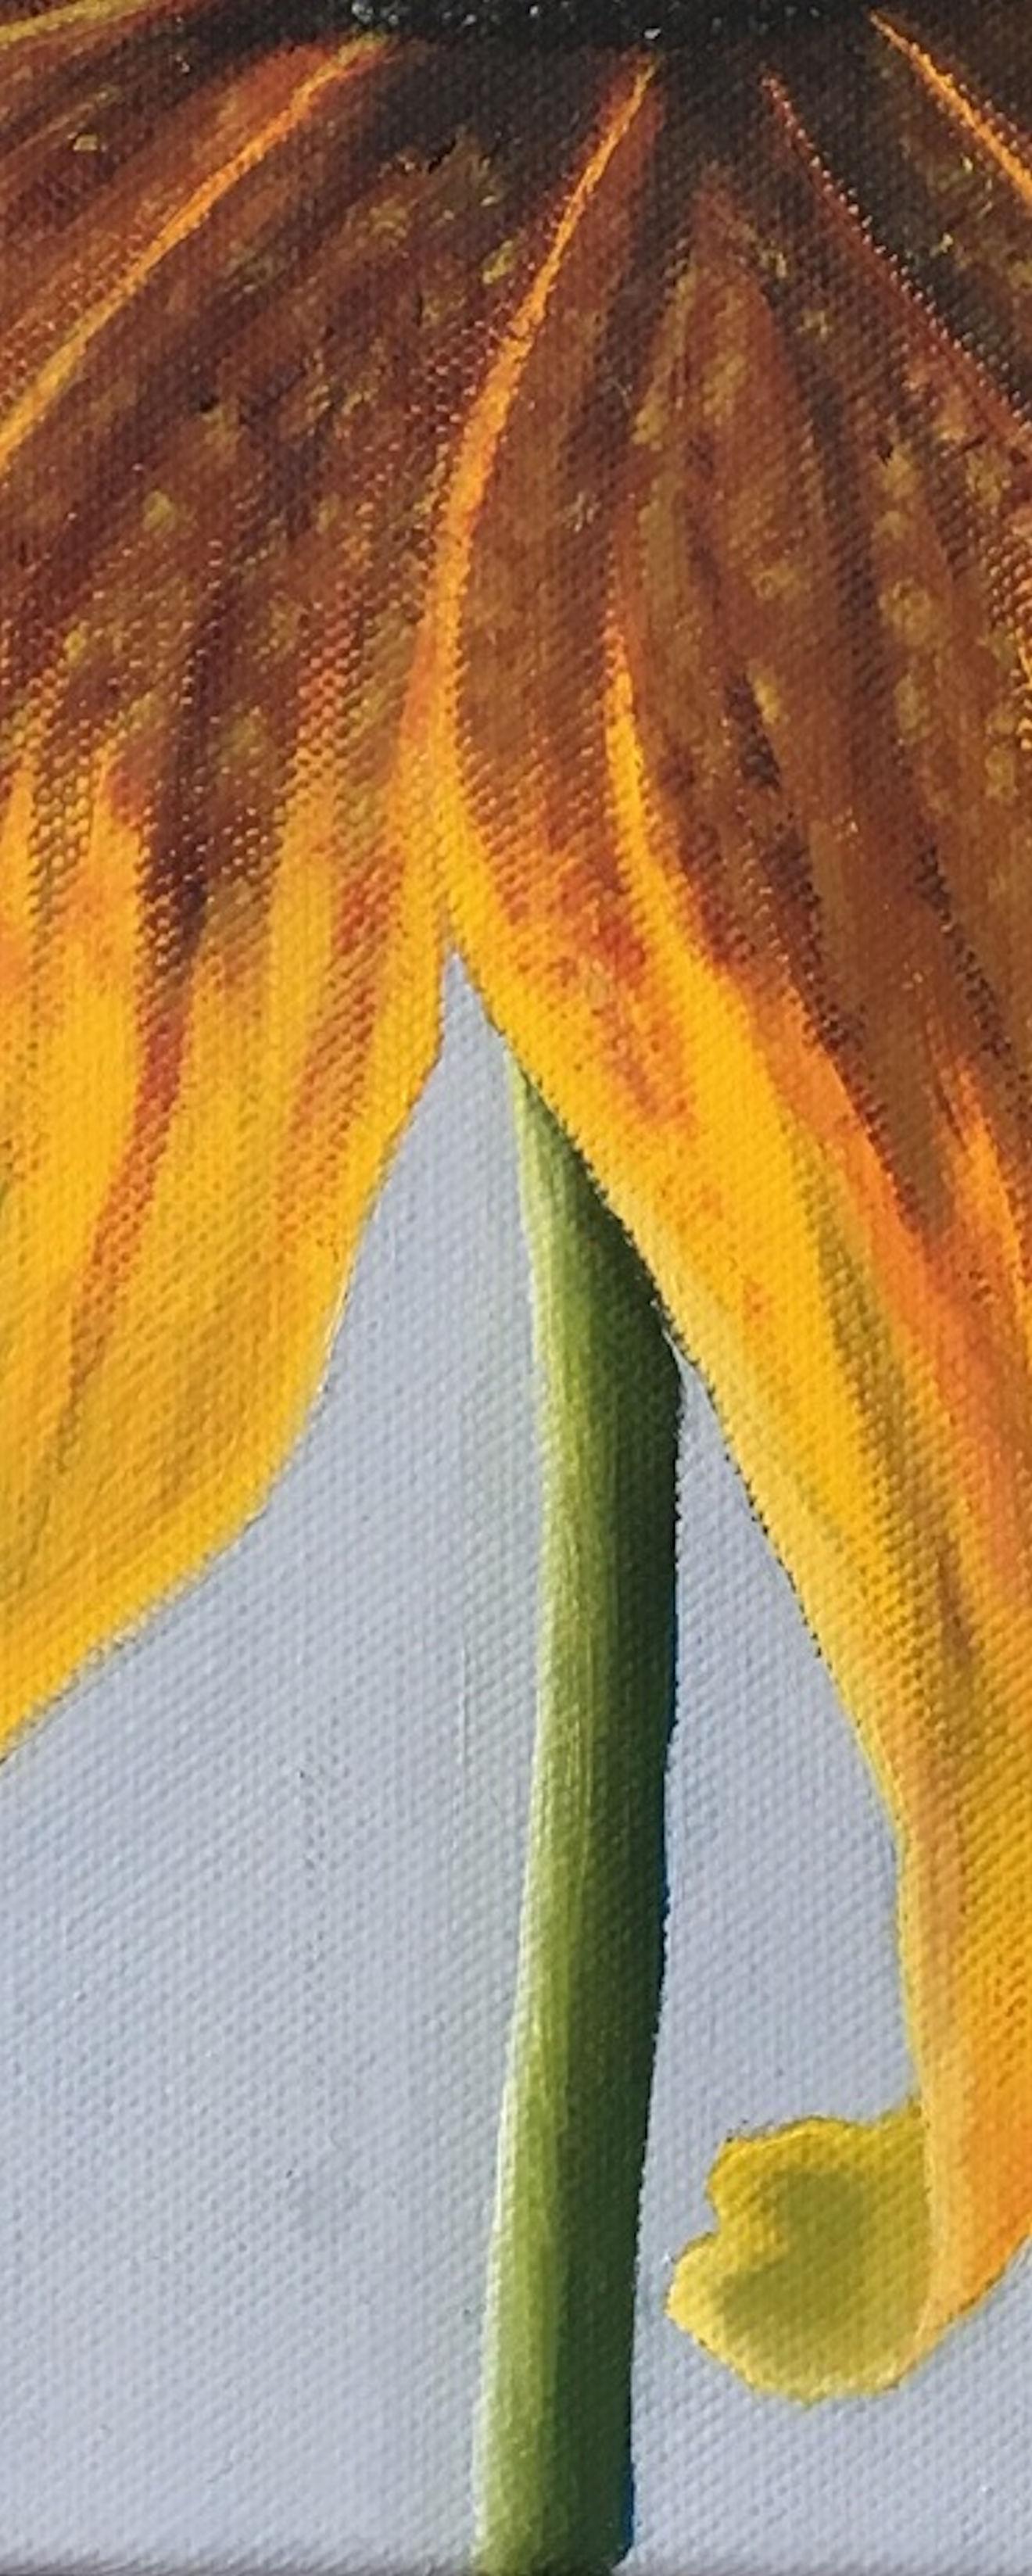 Eine Nahaufnahme eines Sonnenhuts in Öl auf Leinwand.
Es ist eines von vier Gemälden mit farbenprächtigen und fast stilistischen Blumen.

Über den Künstler:

Esther Hansen ist auf dem Lande aufgewachsen und lebt heute auf einem Bauernhof. Sie begann